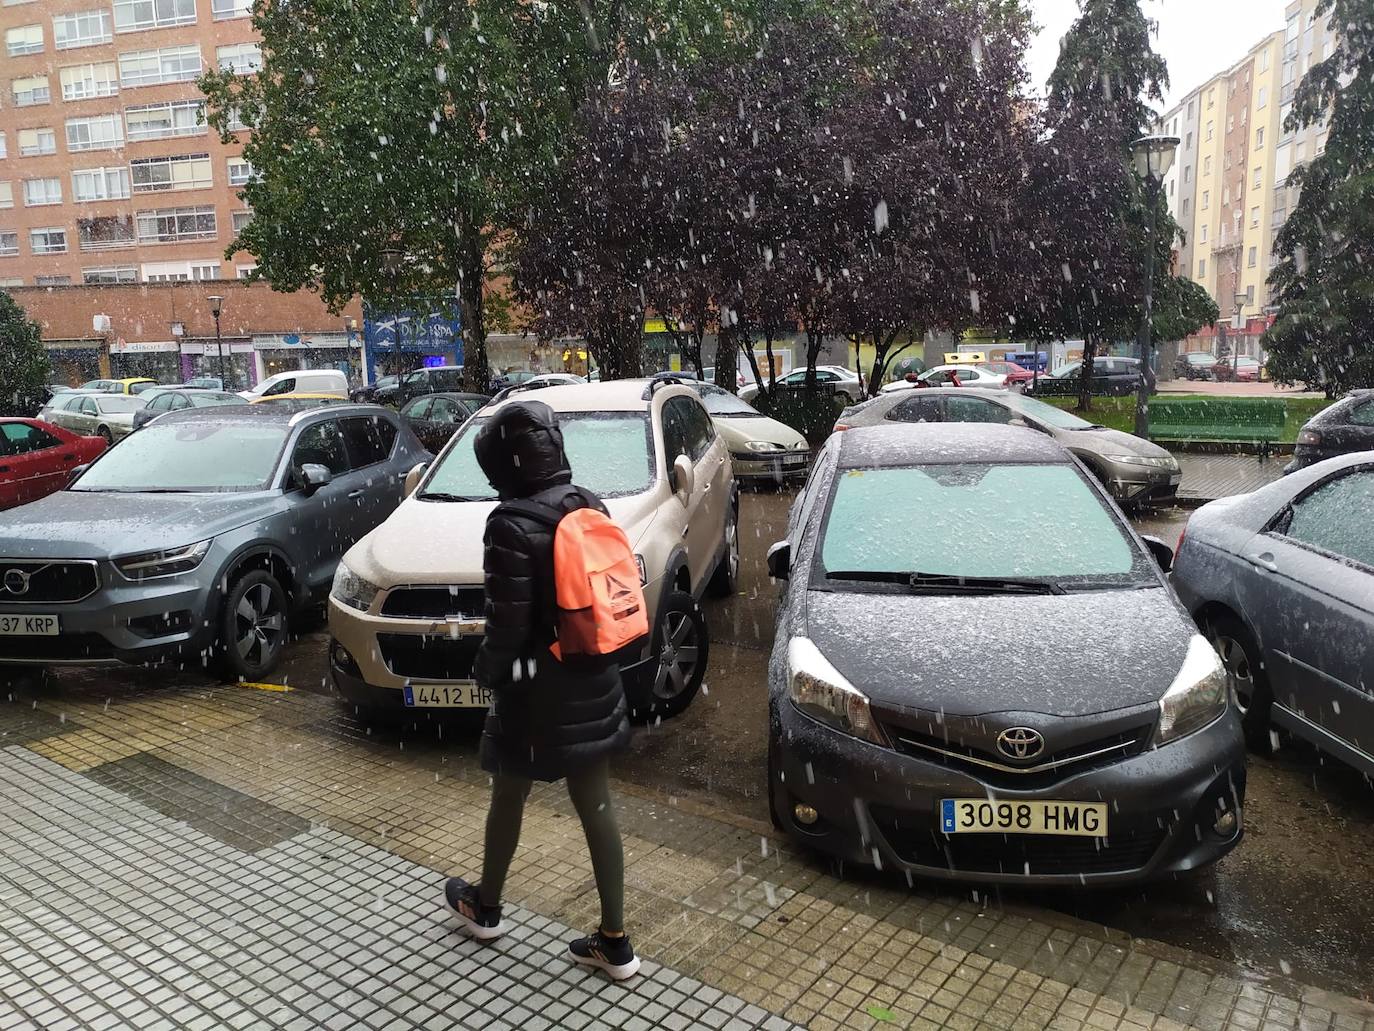 Fotos: La nieve empieza a caer en Burgos, que mantiene las alertas